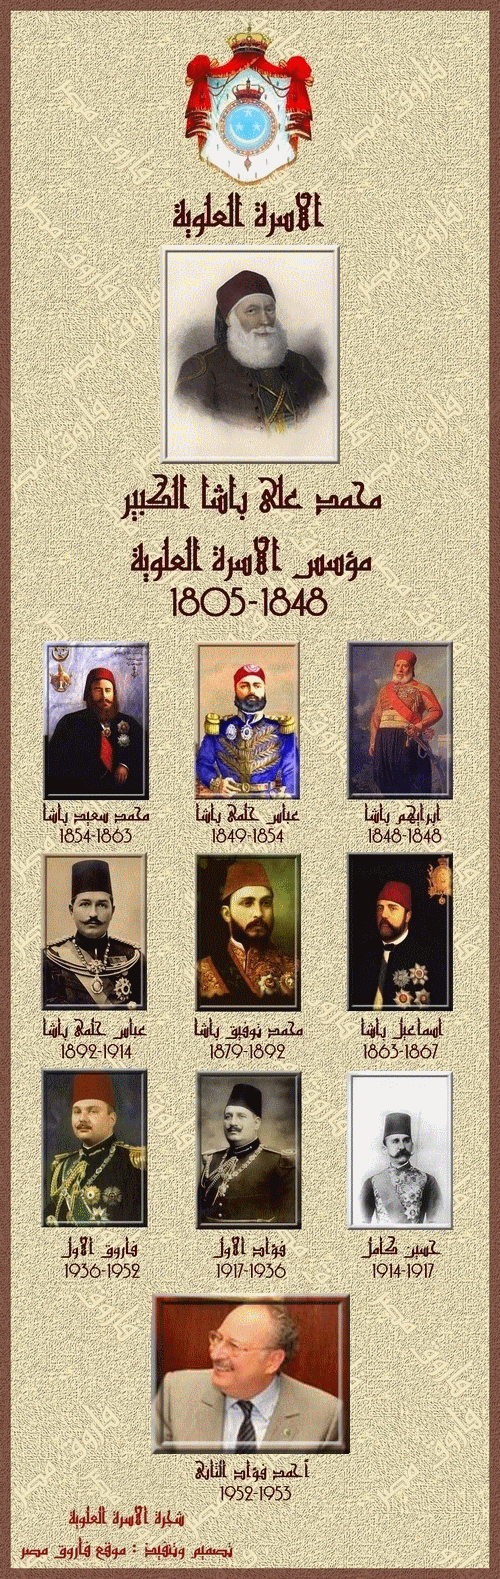 أسرة محمد على باشا ونظام الحكم من الولاية وحتى المملكة Familytree